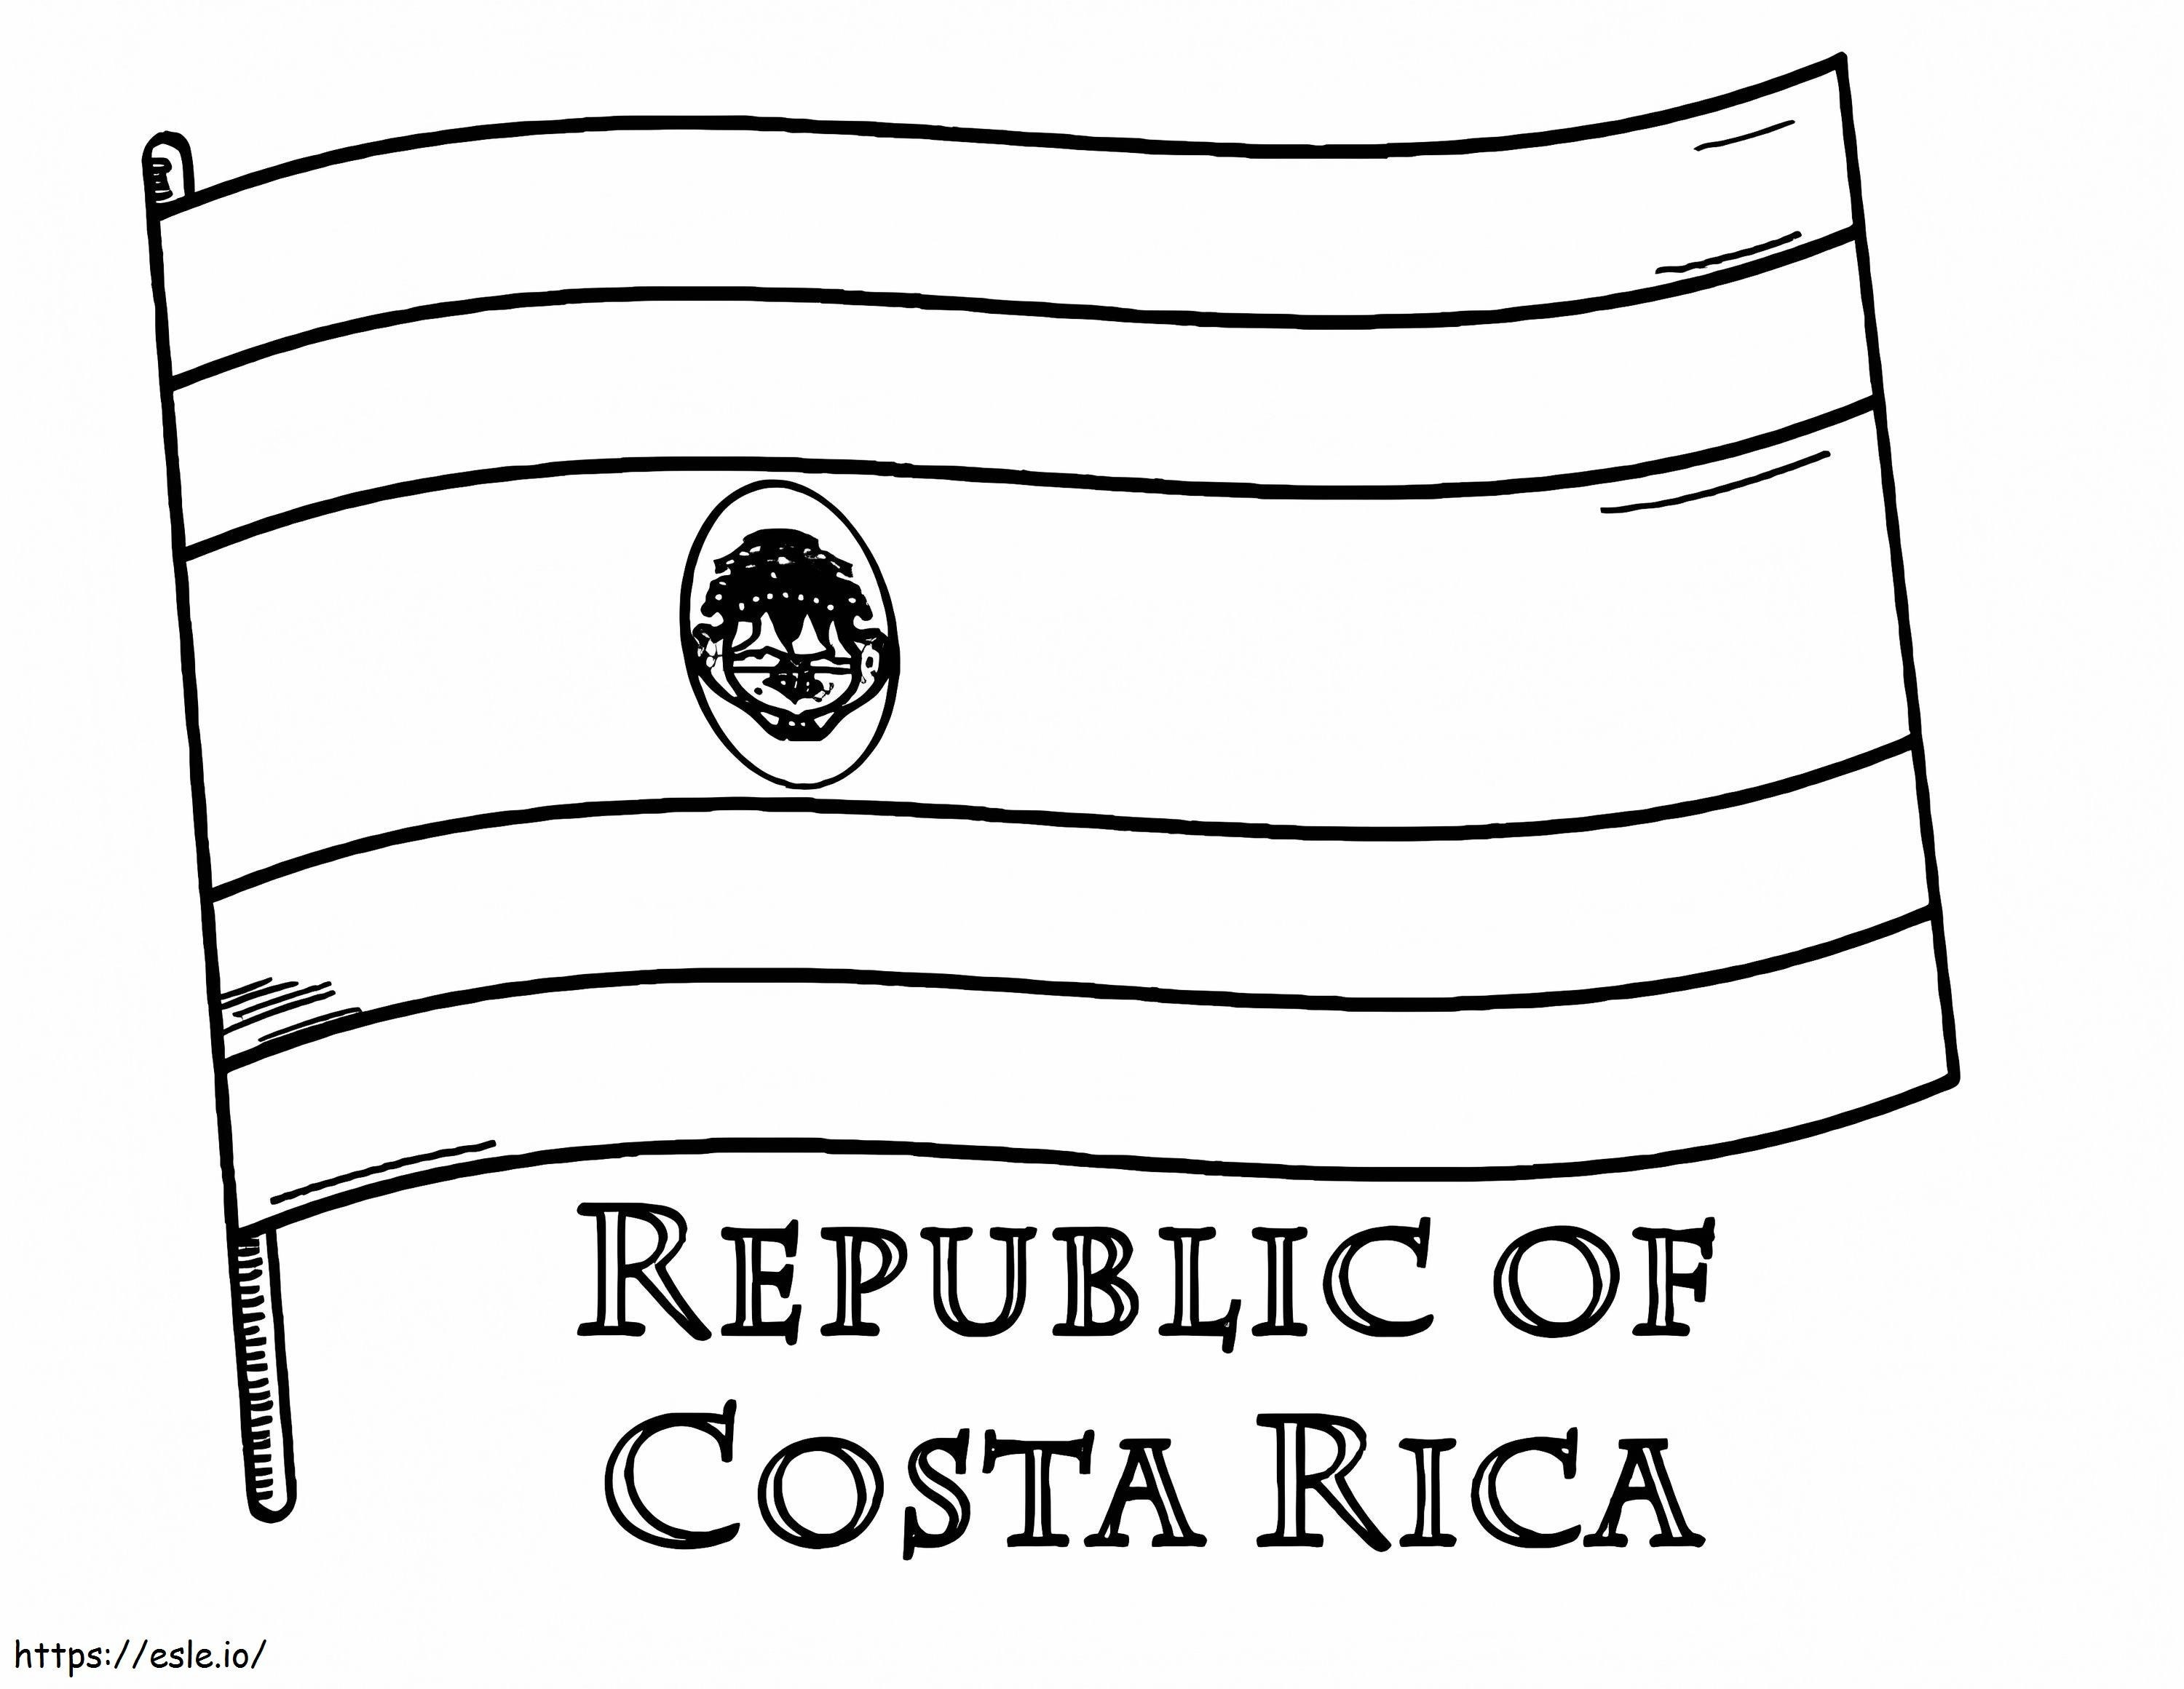 Bandeira da Costa Rica para colorir